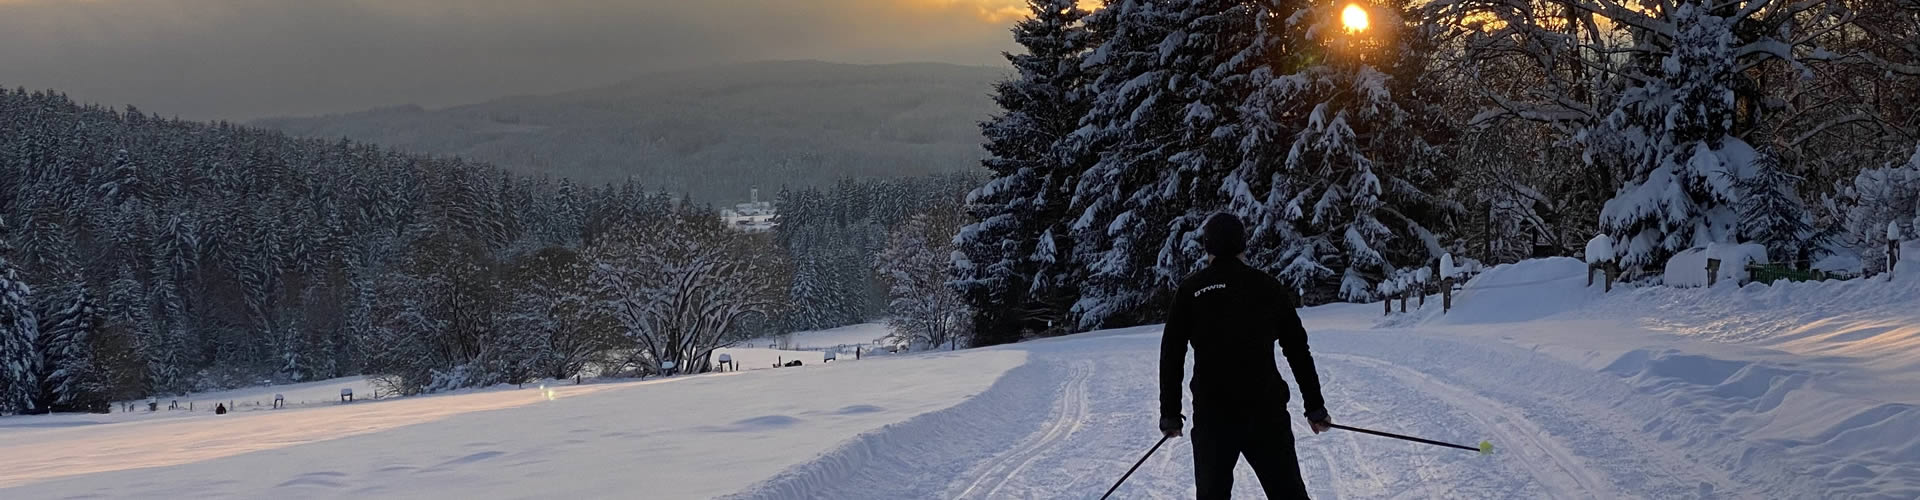 Běžkařská trať v zimě Frymburk -Lipno běžkař při západu slunce